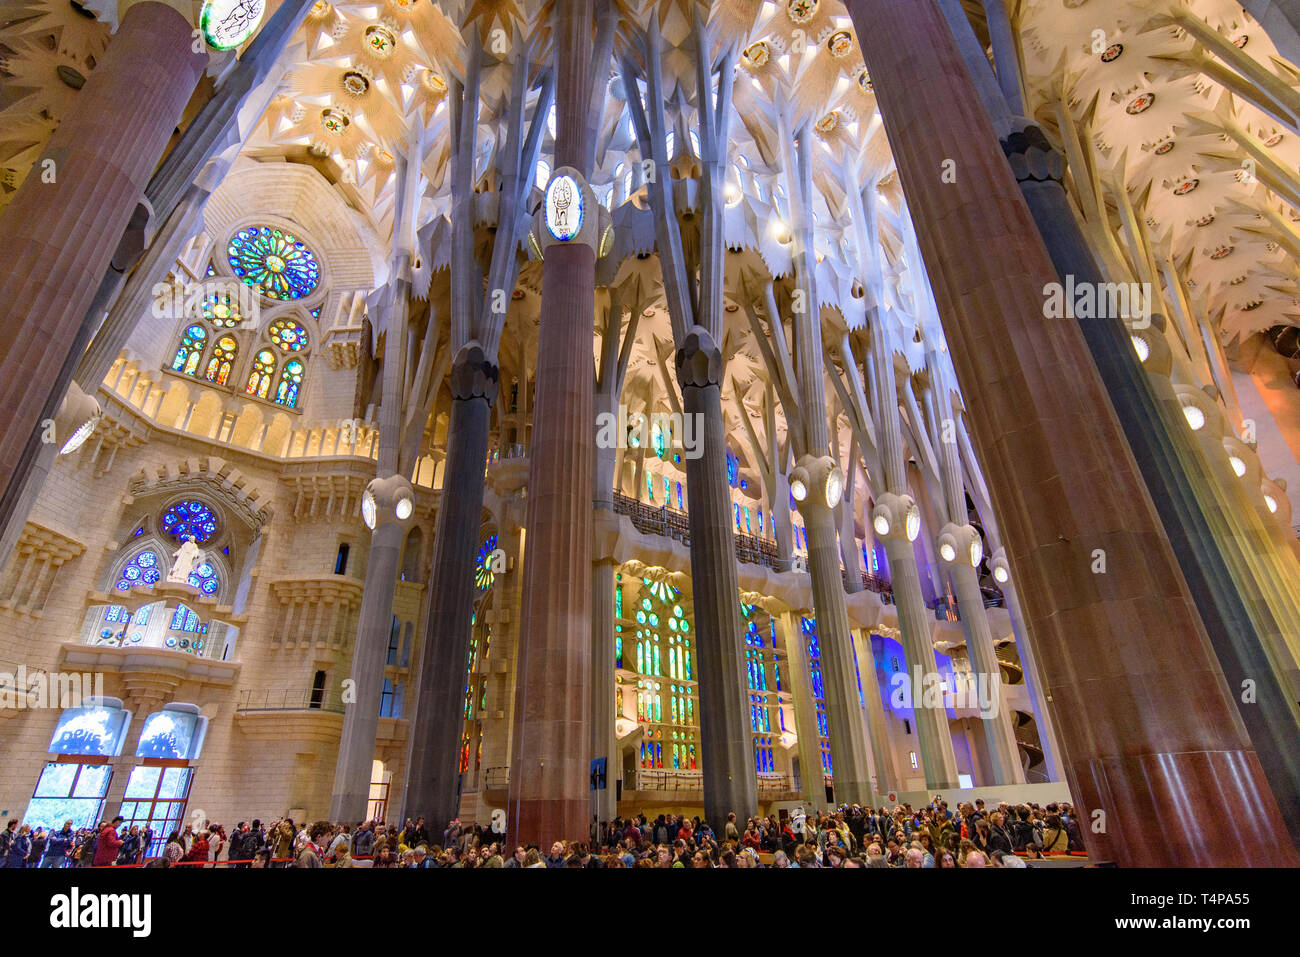 L'intérieur de la Sagrada Familia (église de la Sainte Famille), la cathédrale conçue par Gaudi à Barcelone, Espagne Banque D'Images